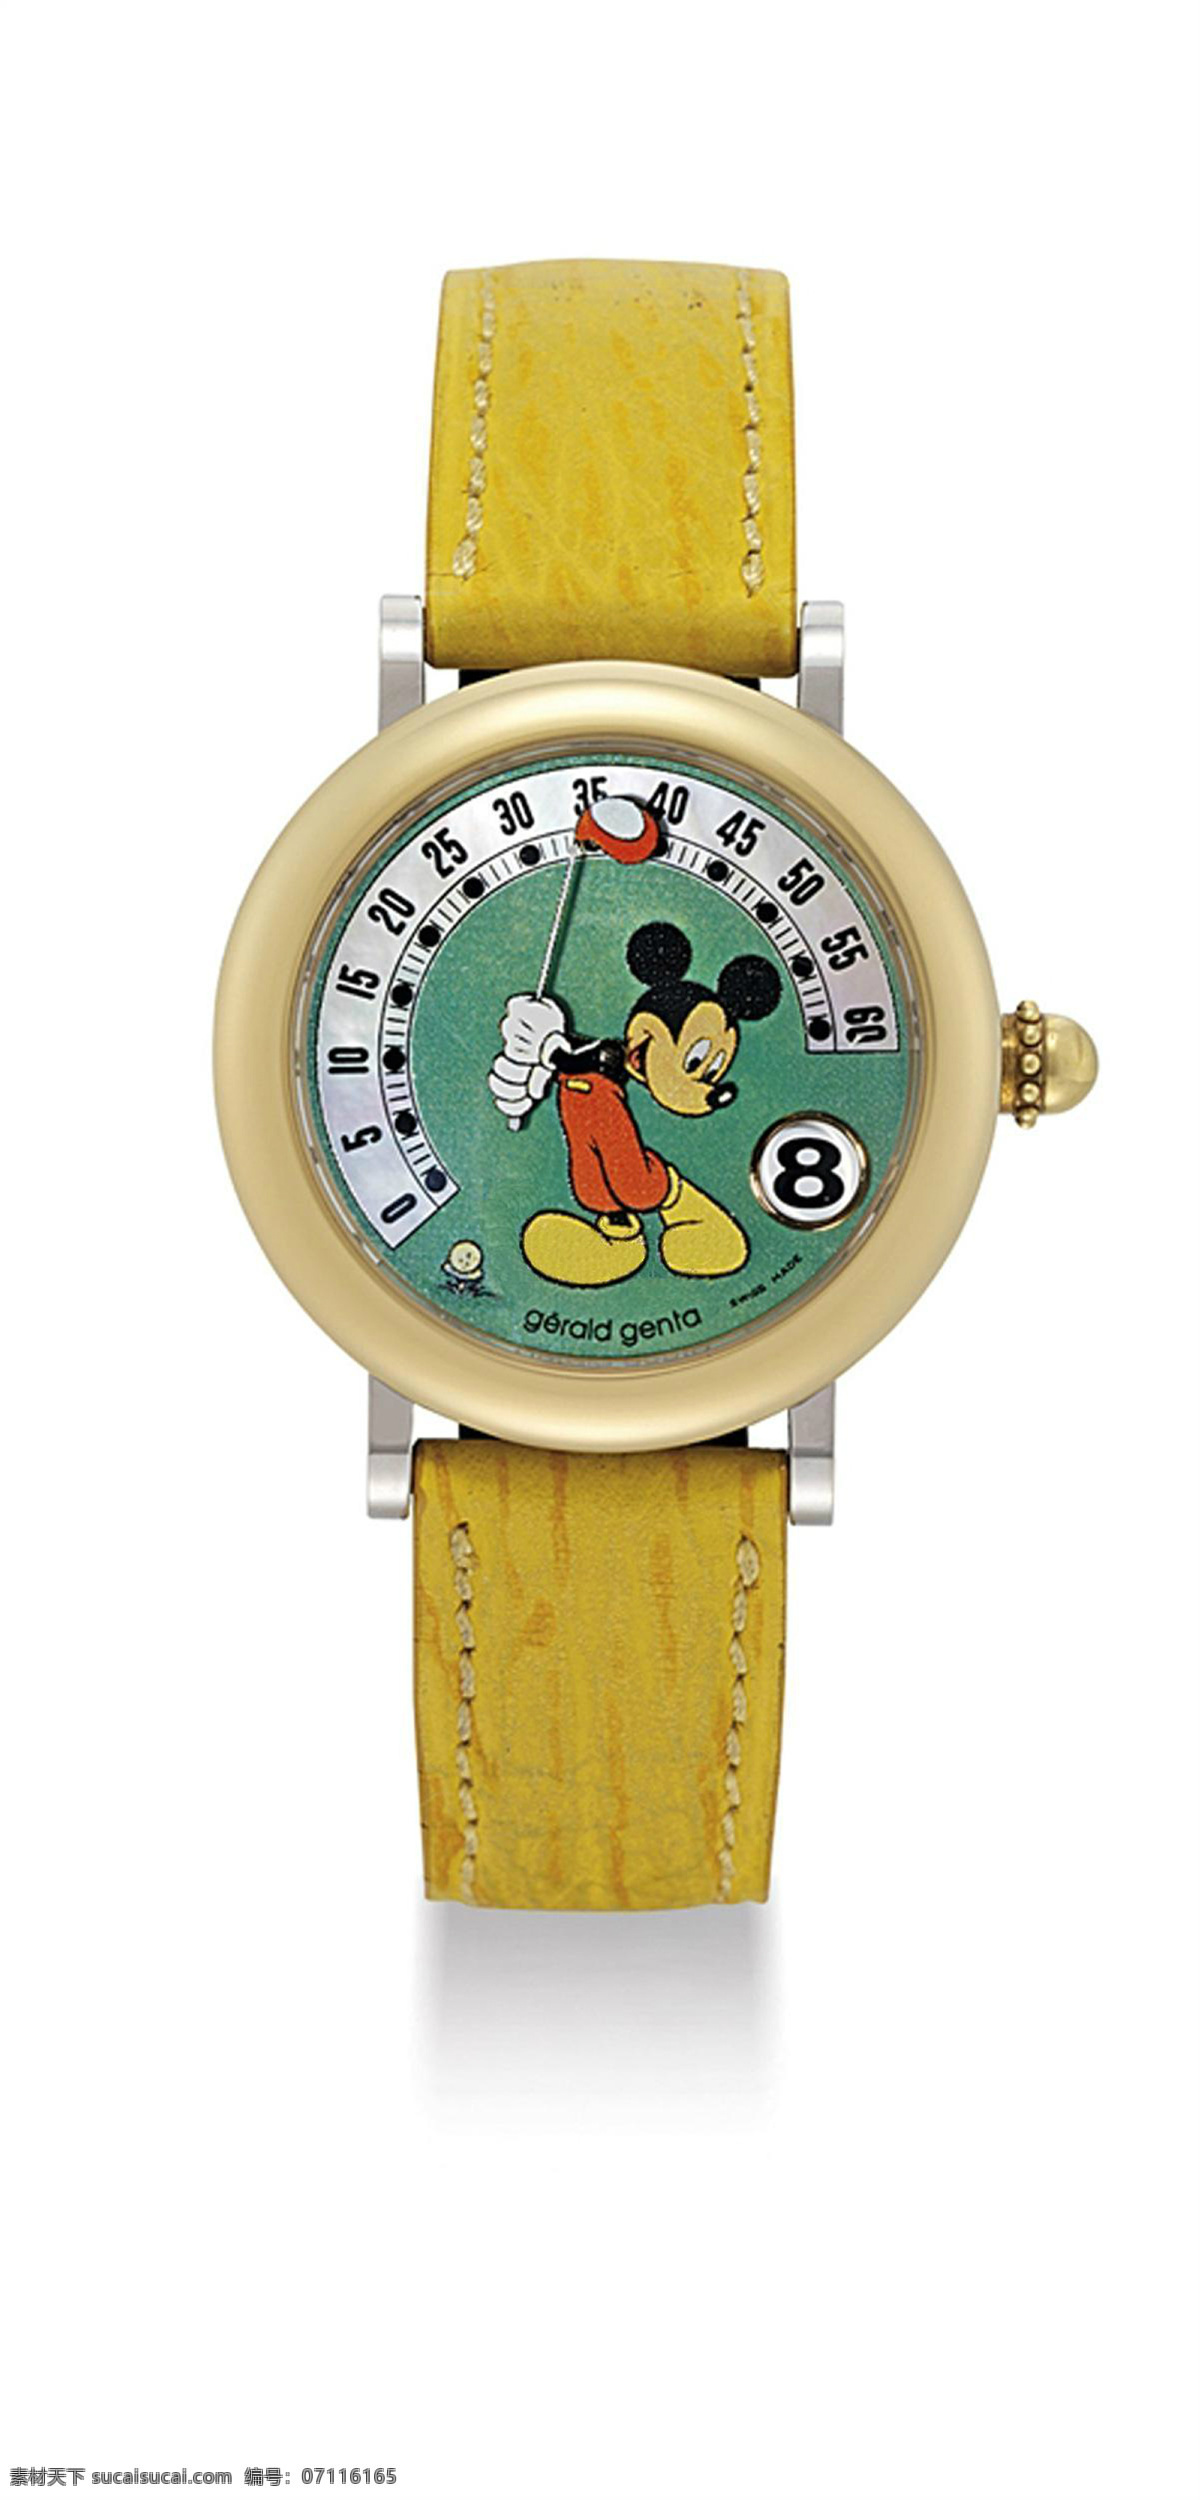 尊达 gerald genta 手表 表框镀金 米老鼠 卡通版 日历显示 石英表机芯 原配表带 女生款手表 瑞士制造 国内外钟表 生活素材 生活百科